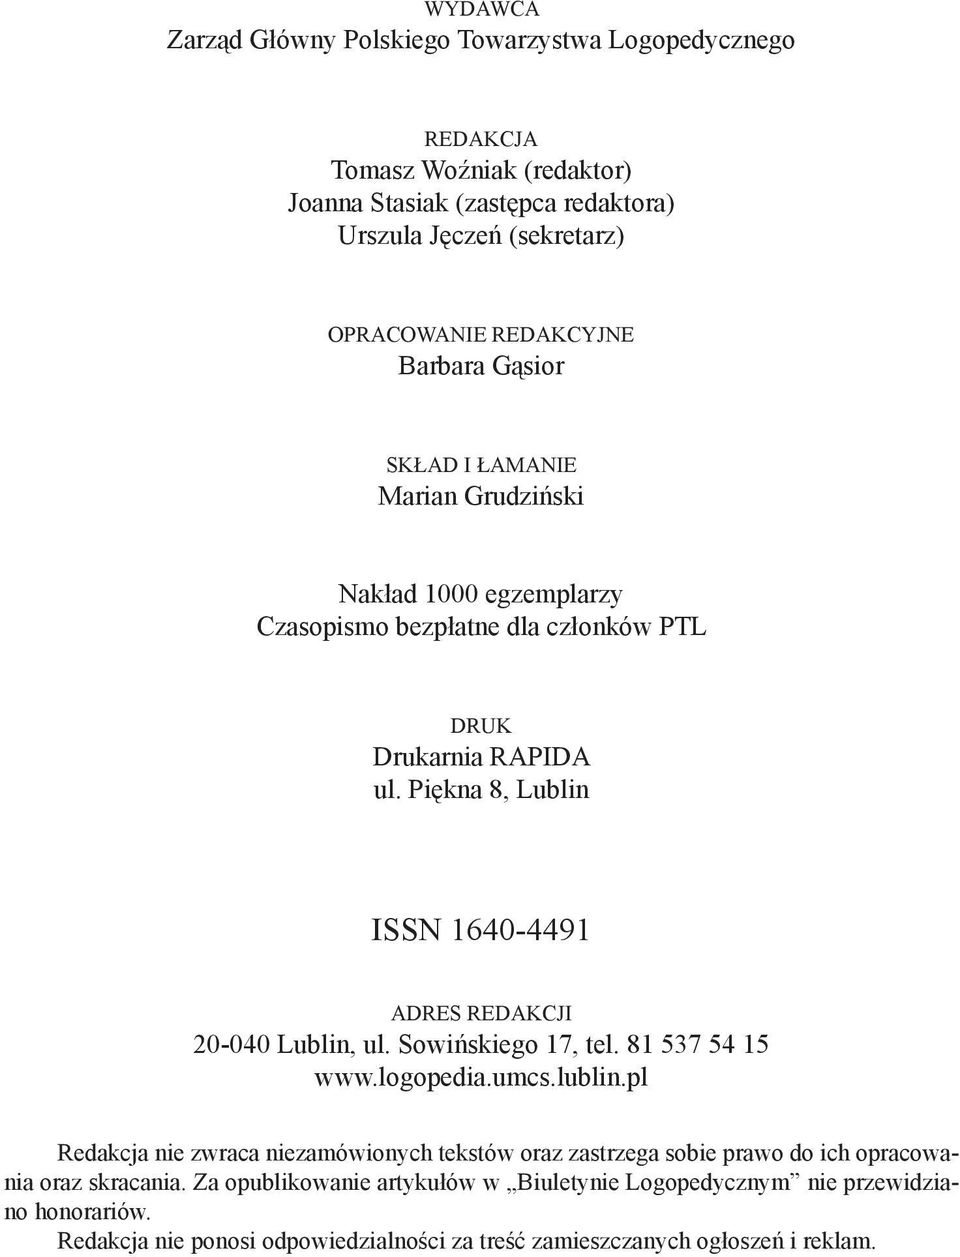 Piękna 8, Lublin ISSN 1640-4491 ADRES REDAKCJI 20-040 Lublin, ul. Sowińskiego 17, tel. 81 537 54 15 www.logopedia.umcs.lublin.